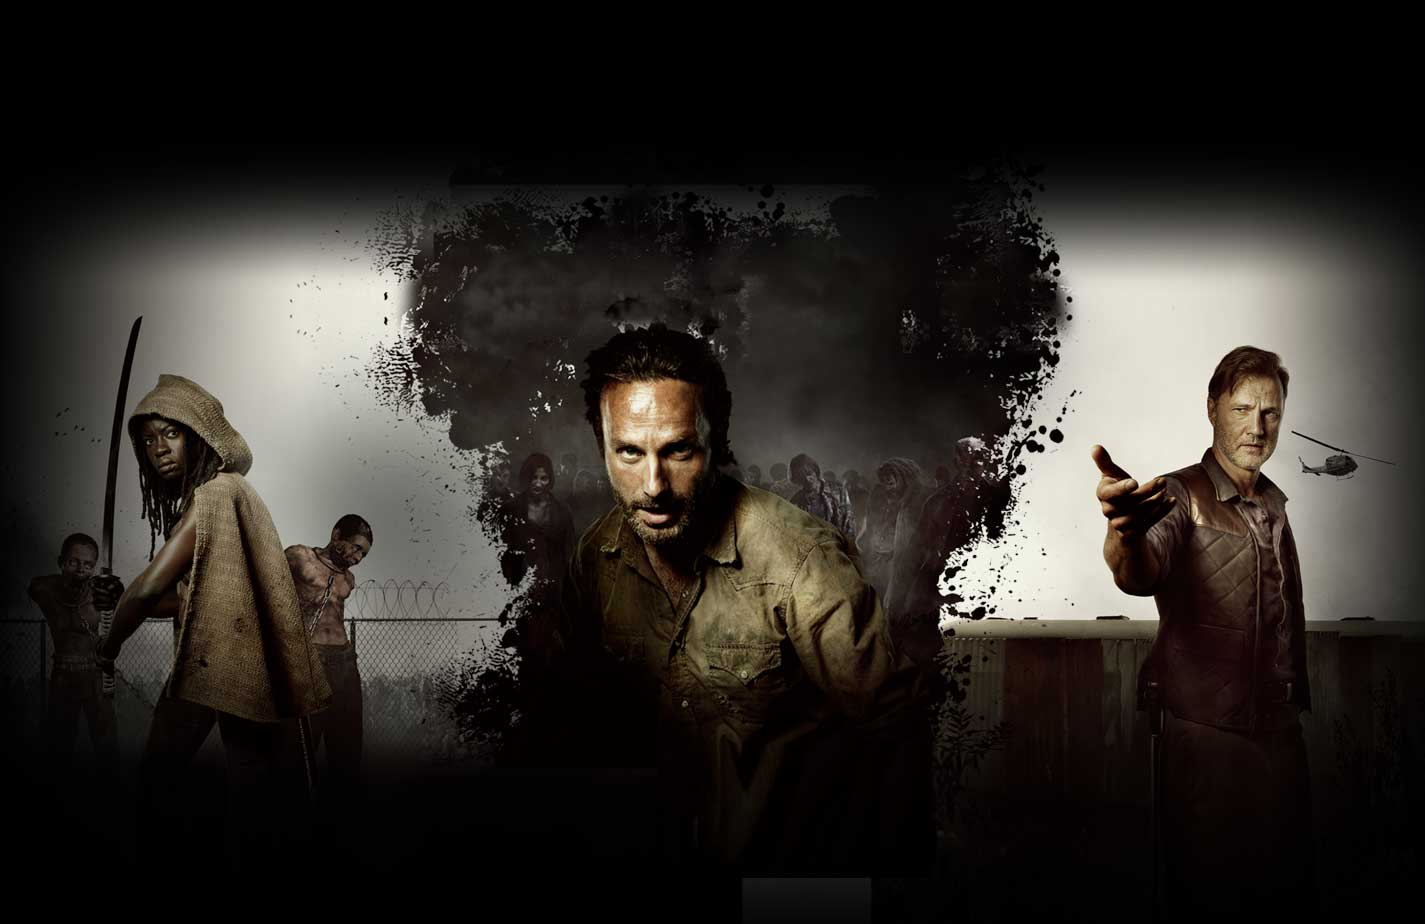 Walking Dead Season 3 HD Wallpaper 1425x924px